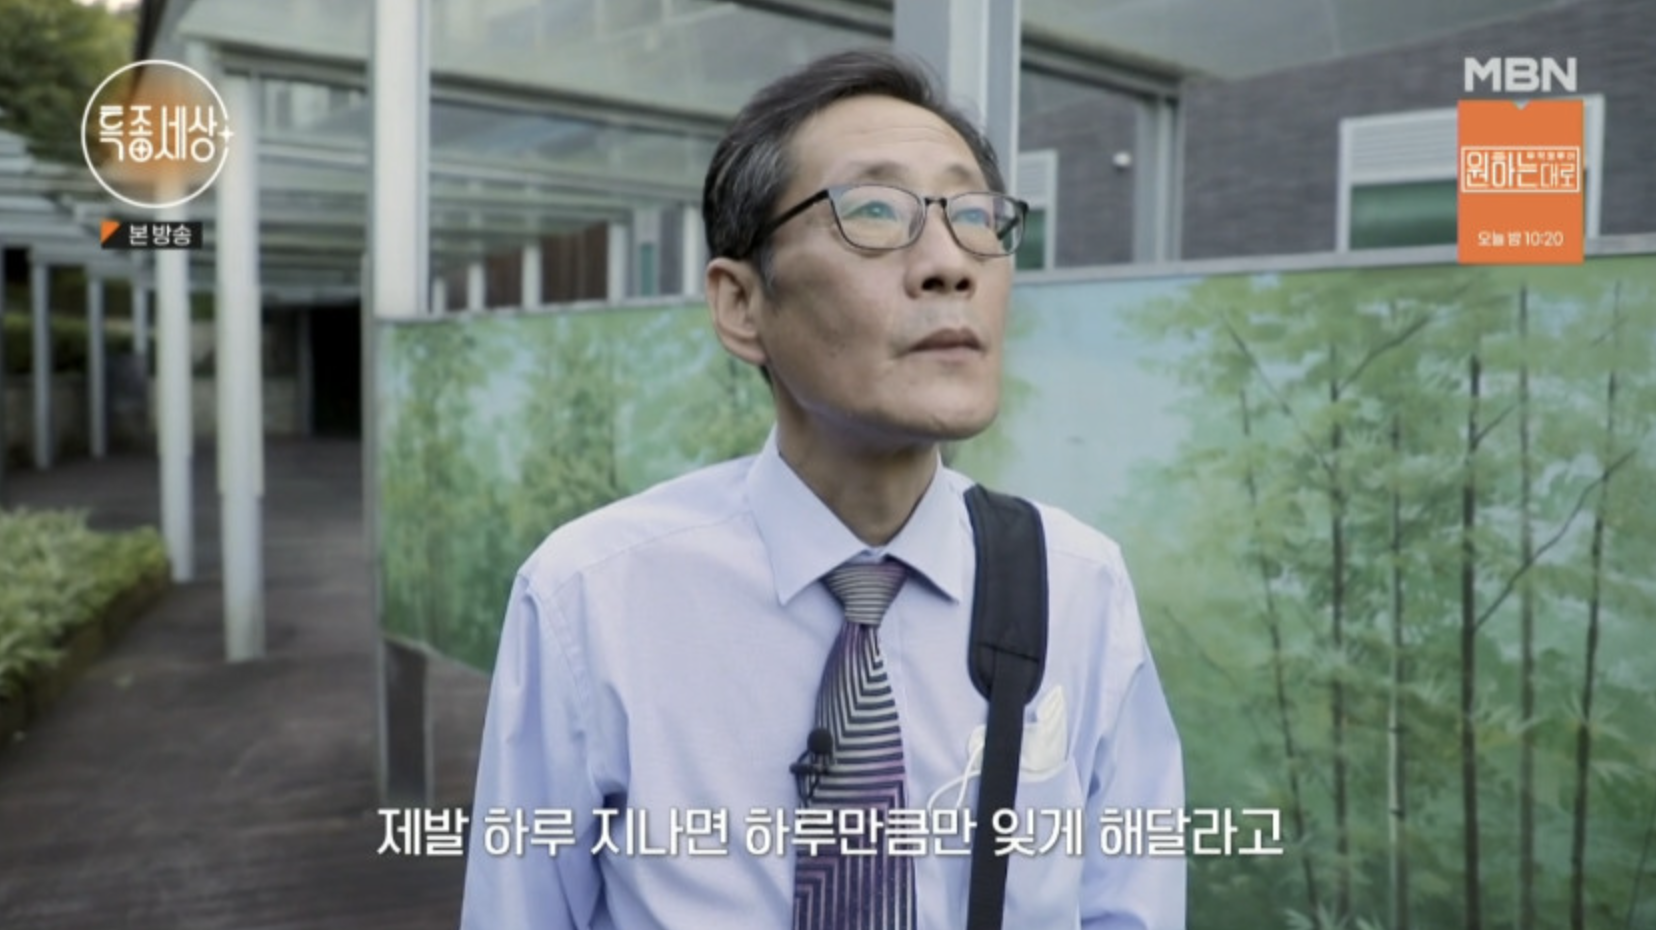 김태형 아내 세아들 살인 사건